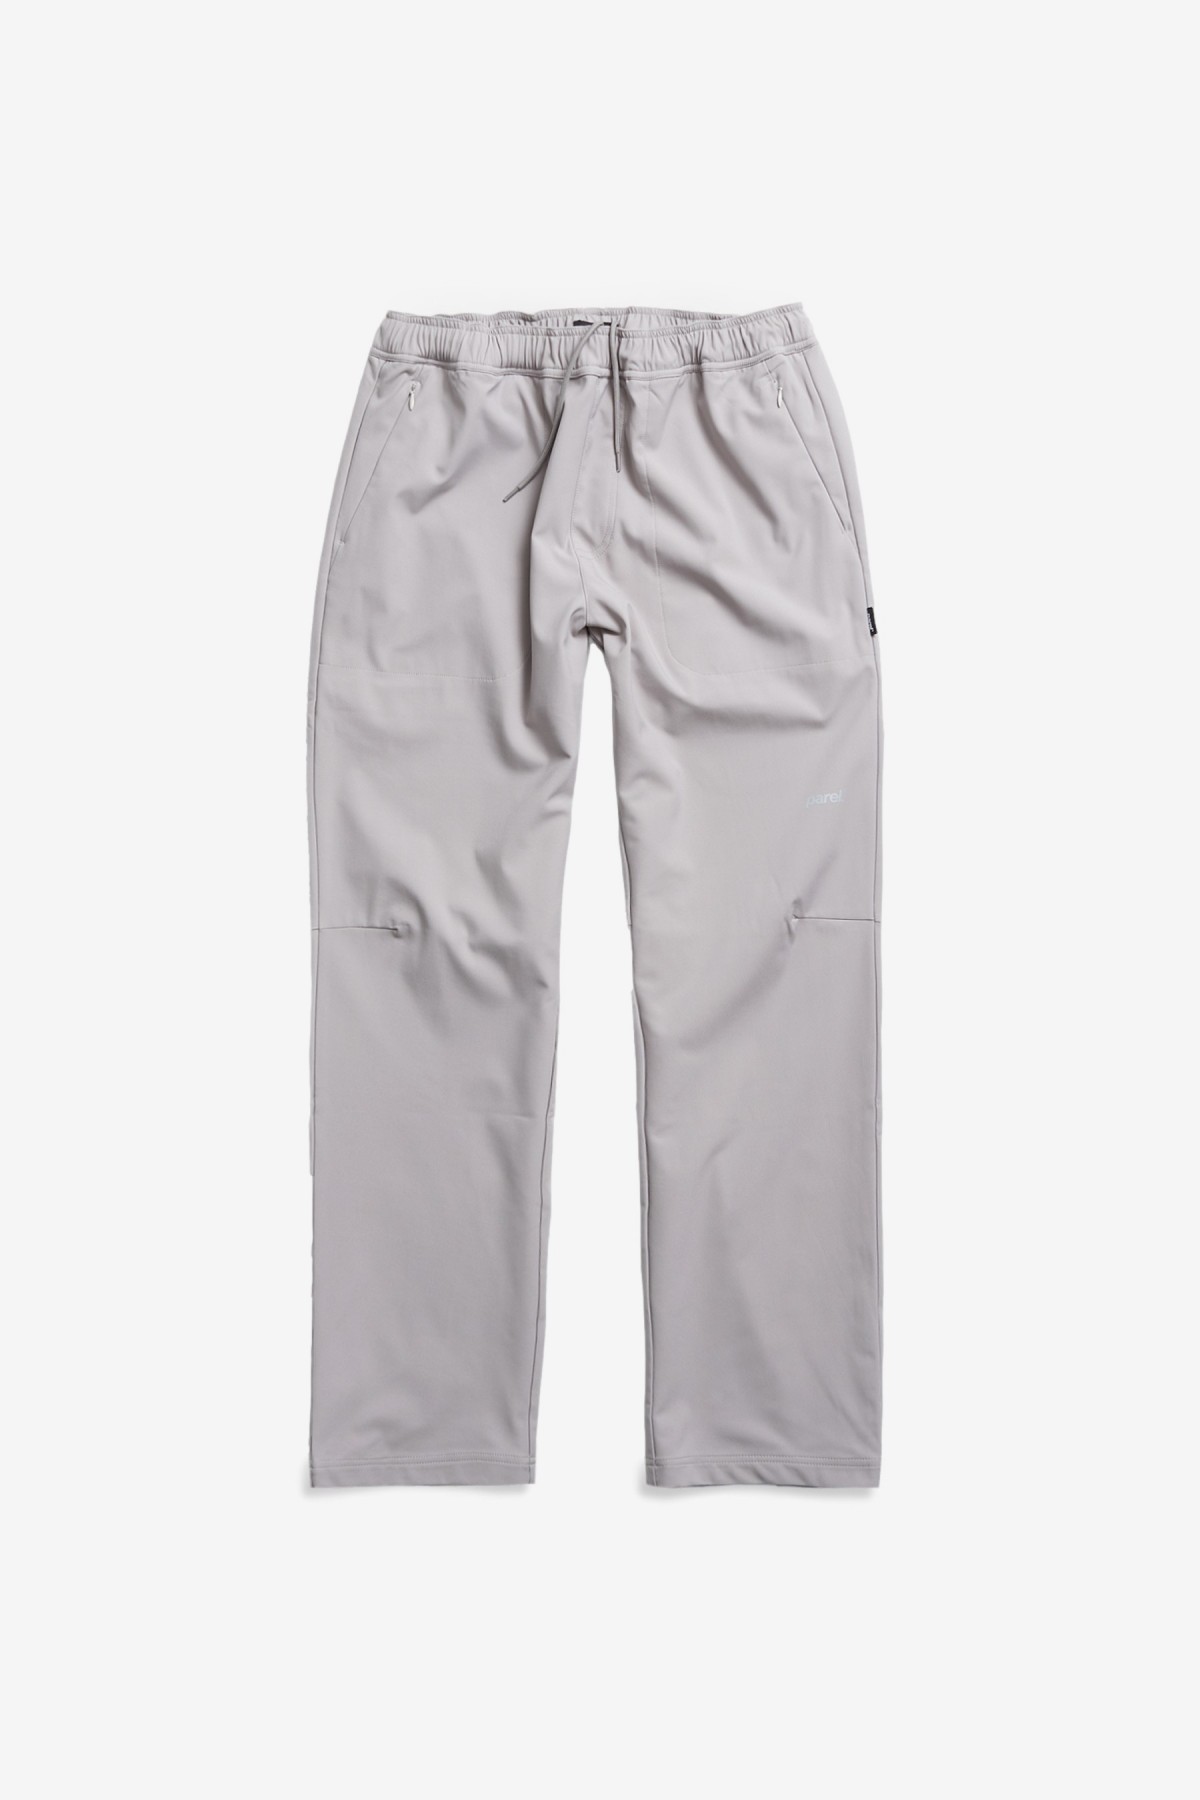 Parel Legan Pants in Light Grey